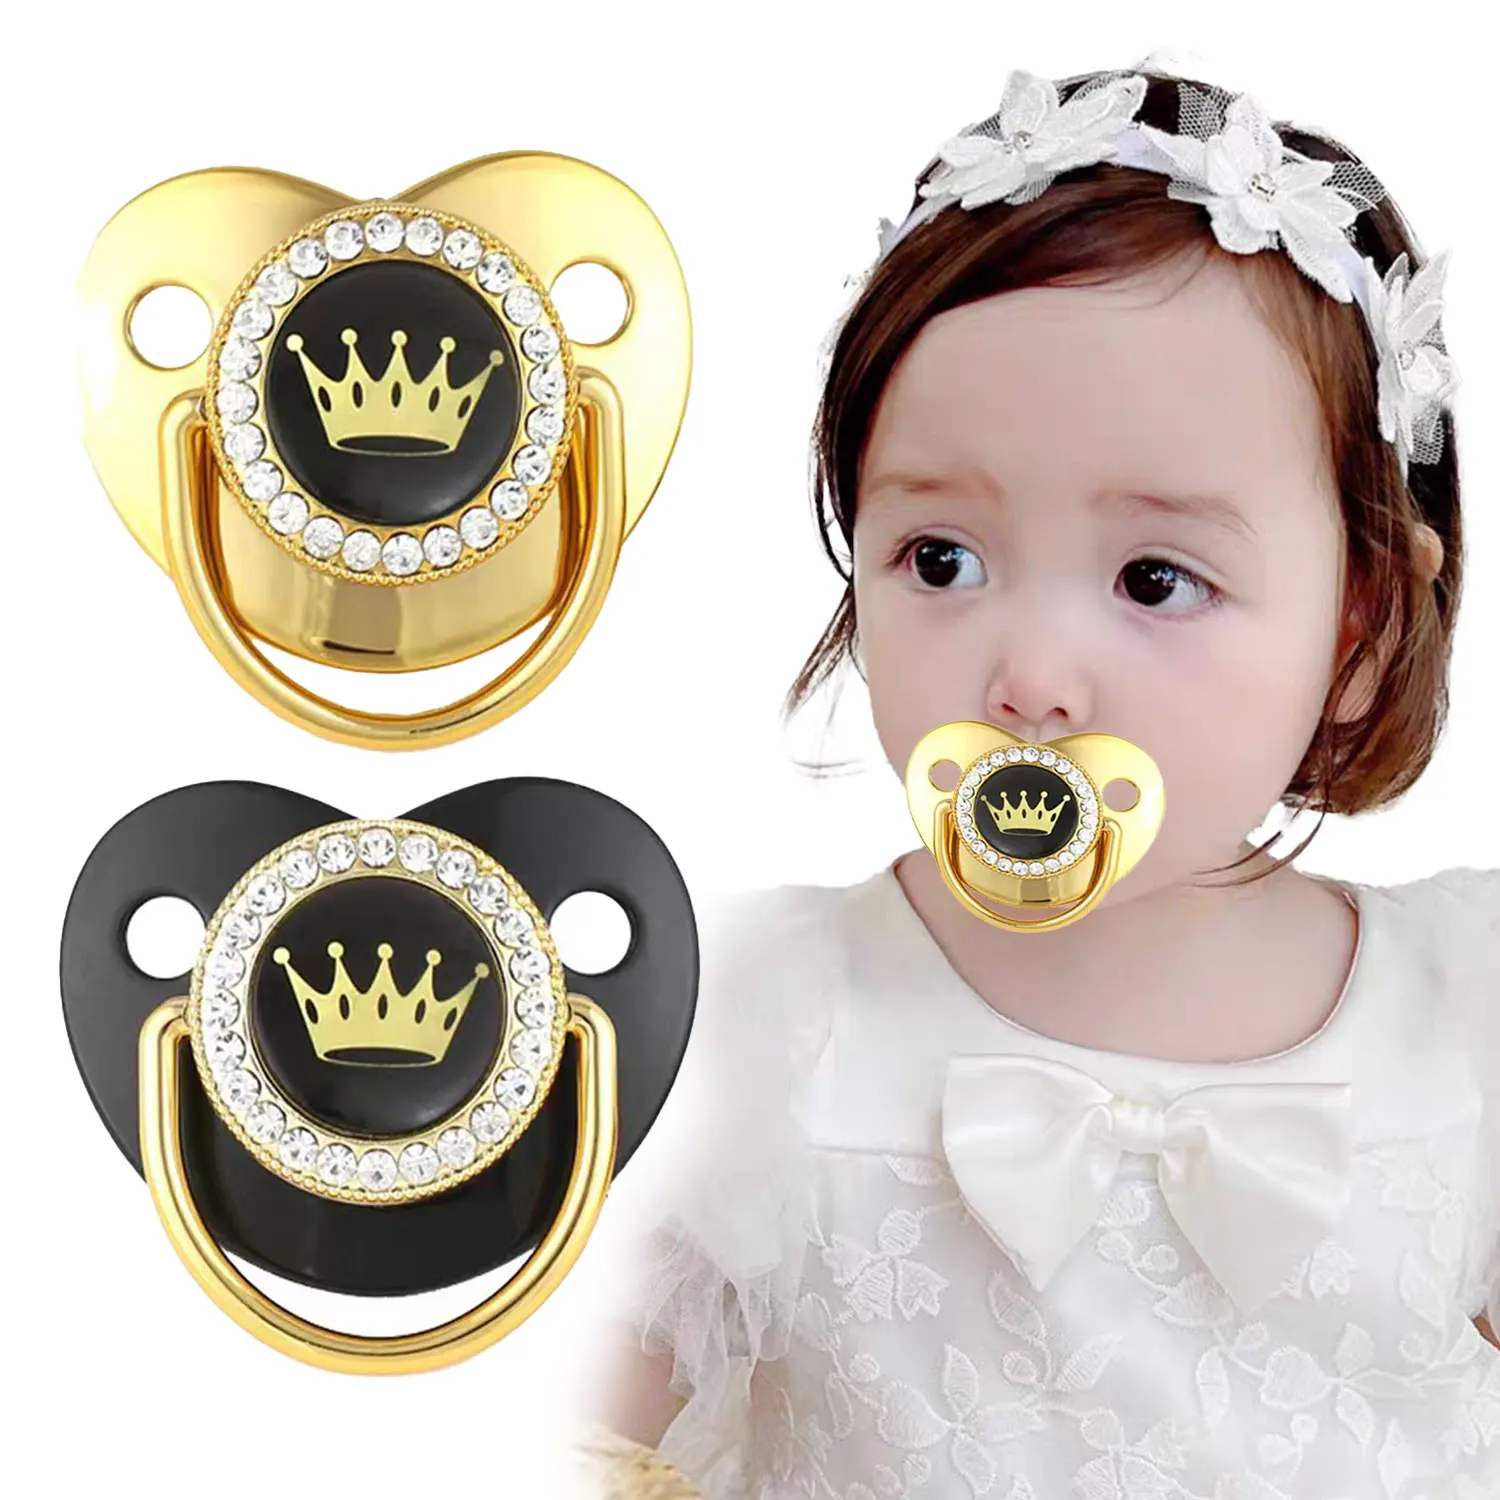 

Детская Соска с алмазной короной, Жидкая силиконовая соска для детей 0-3 лет, Прорезыватель для зубов для новорожденных, без бисфенола, с пылезащитной крышкой